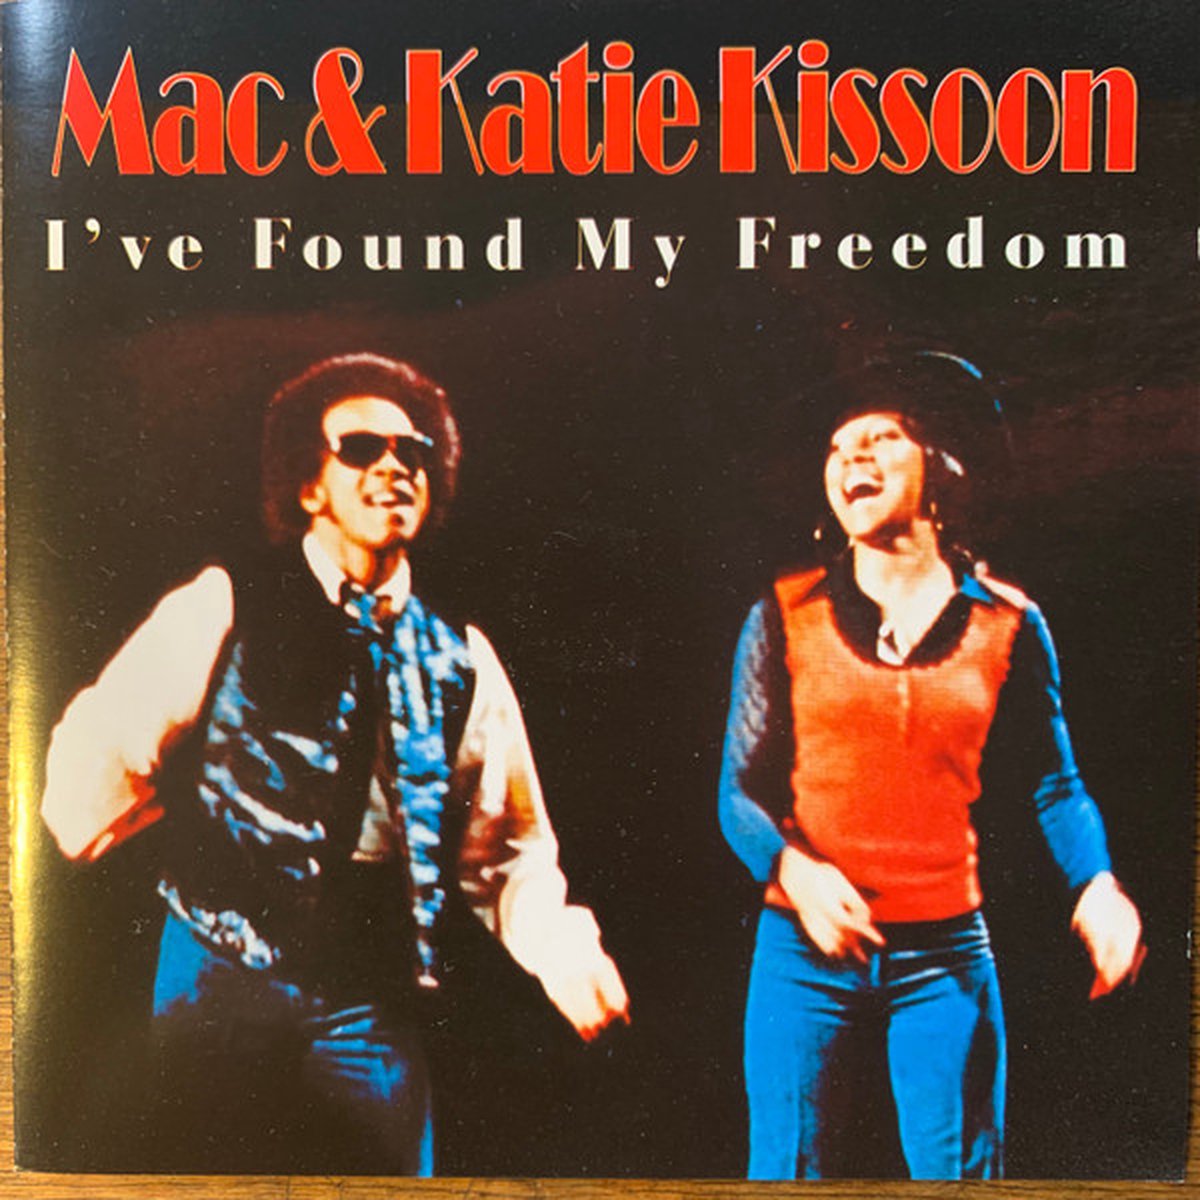 Mac & Katie Kissoon I've found my freedom - Mac & Katie